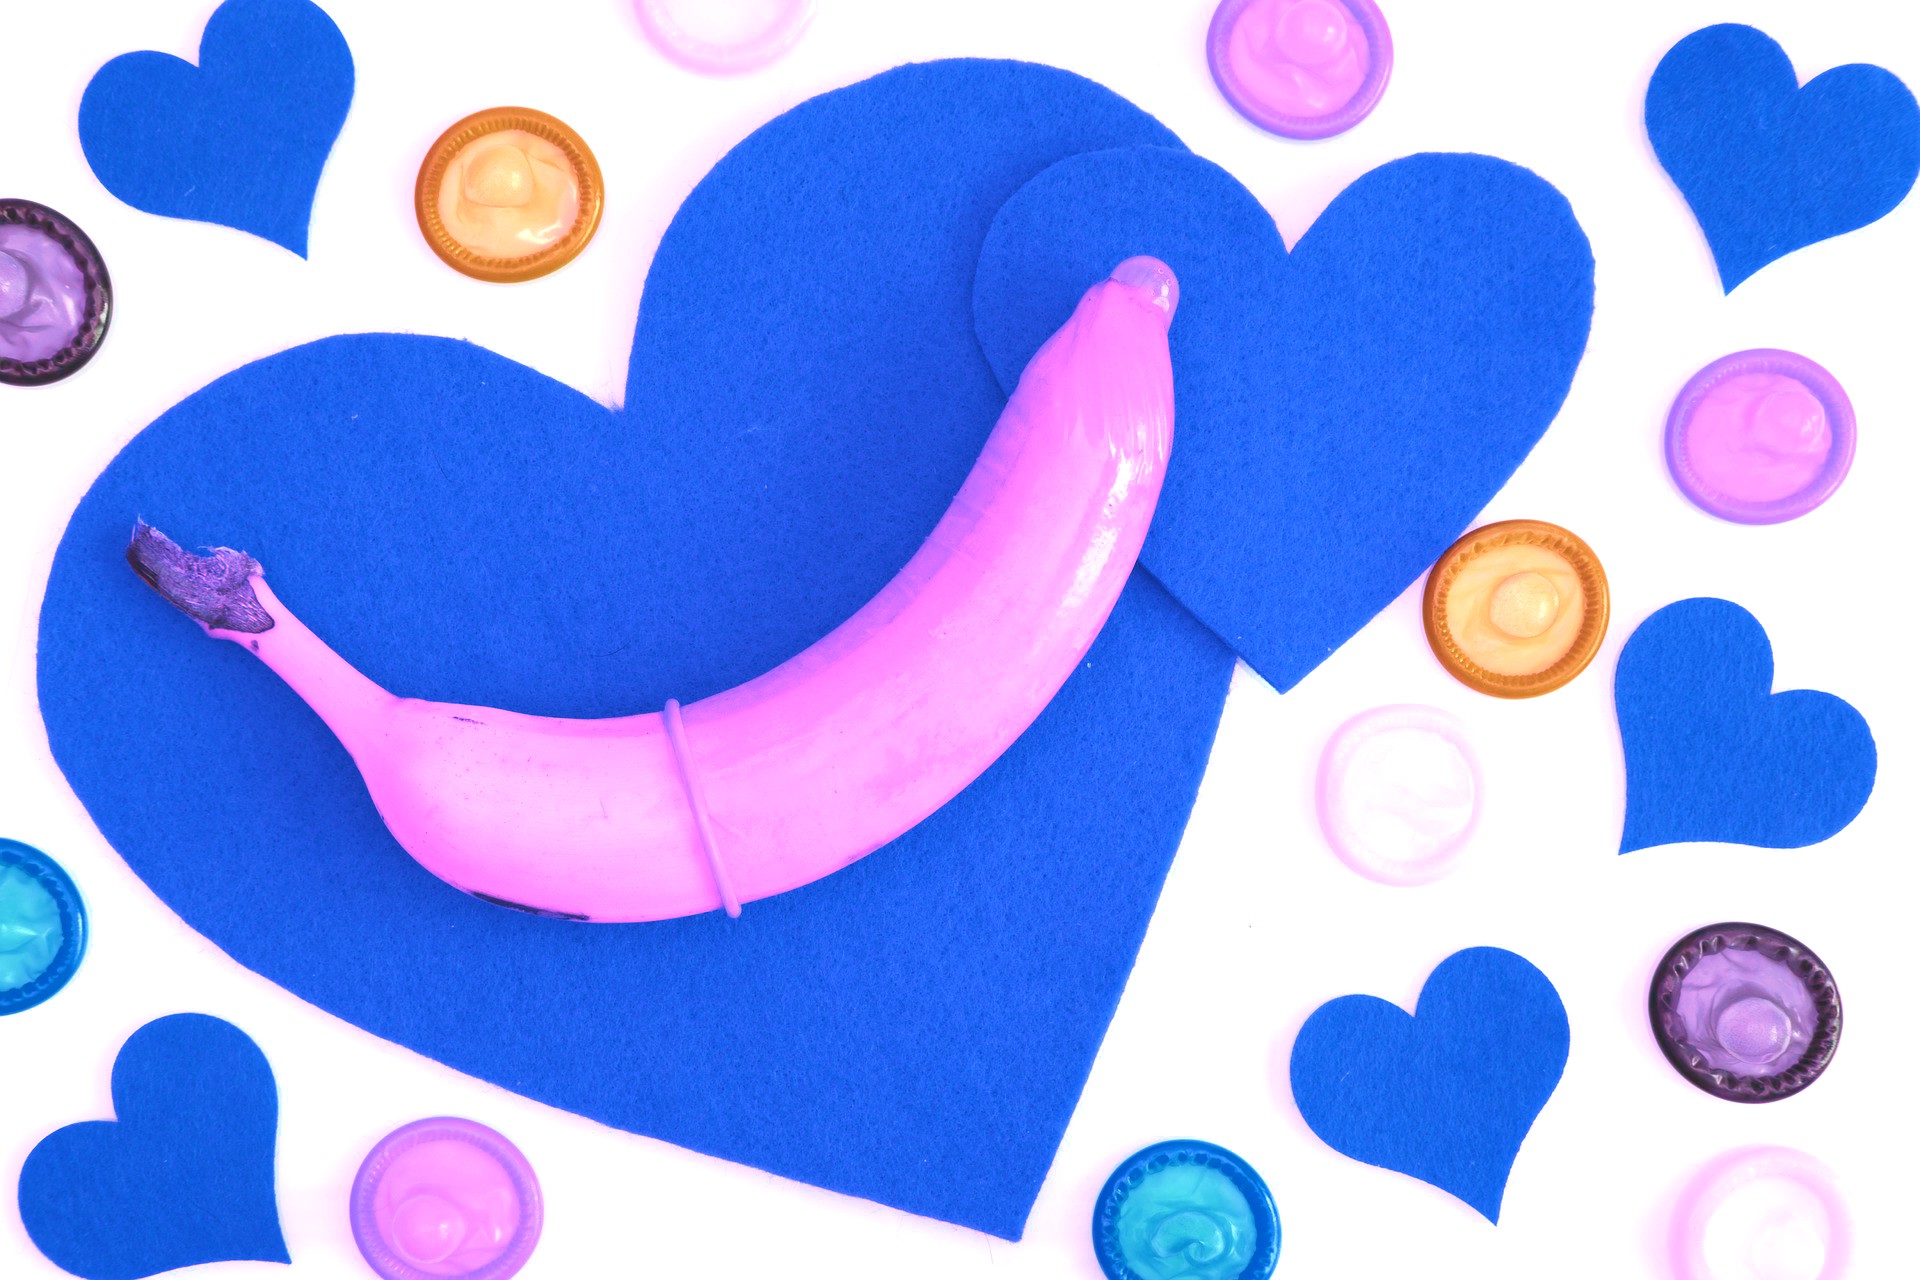 <img src="heart.jpg" alt=blue heart and condoms"/> 